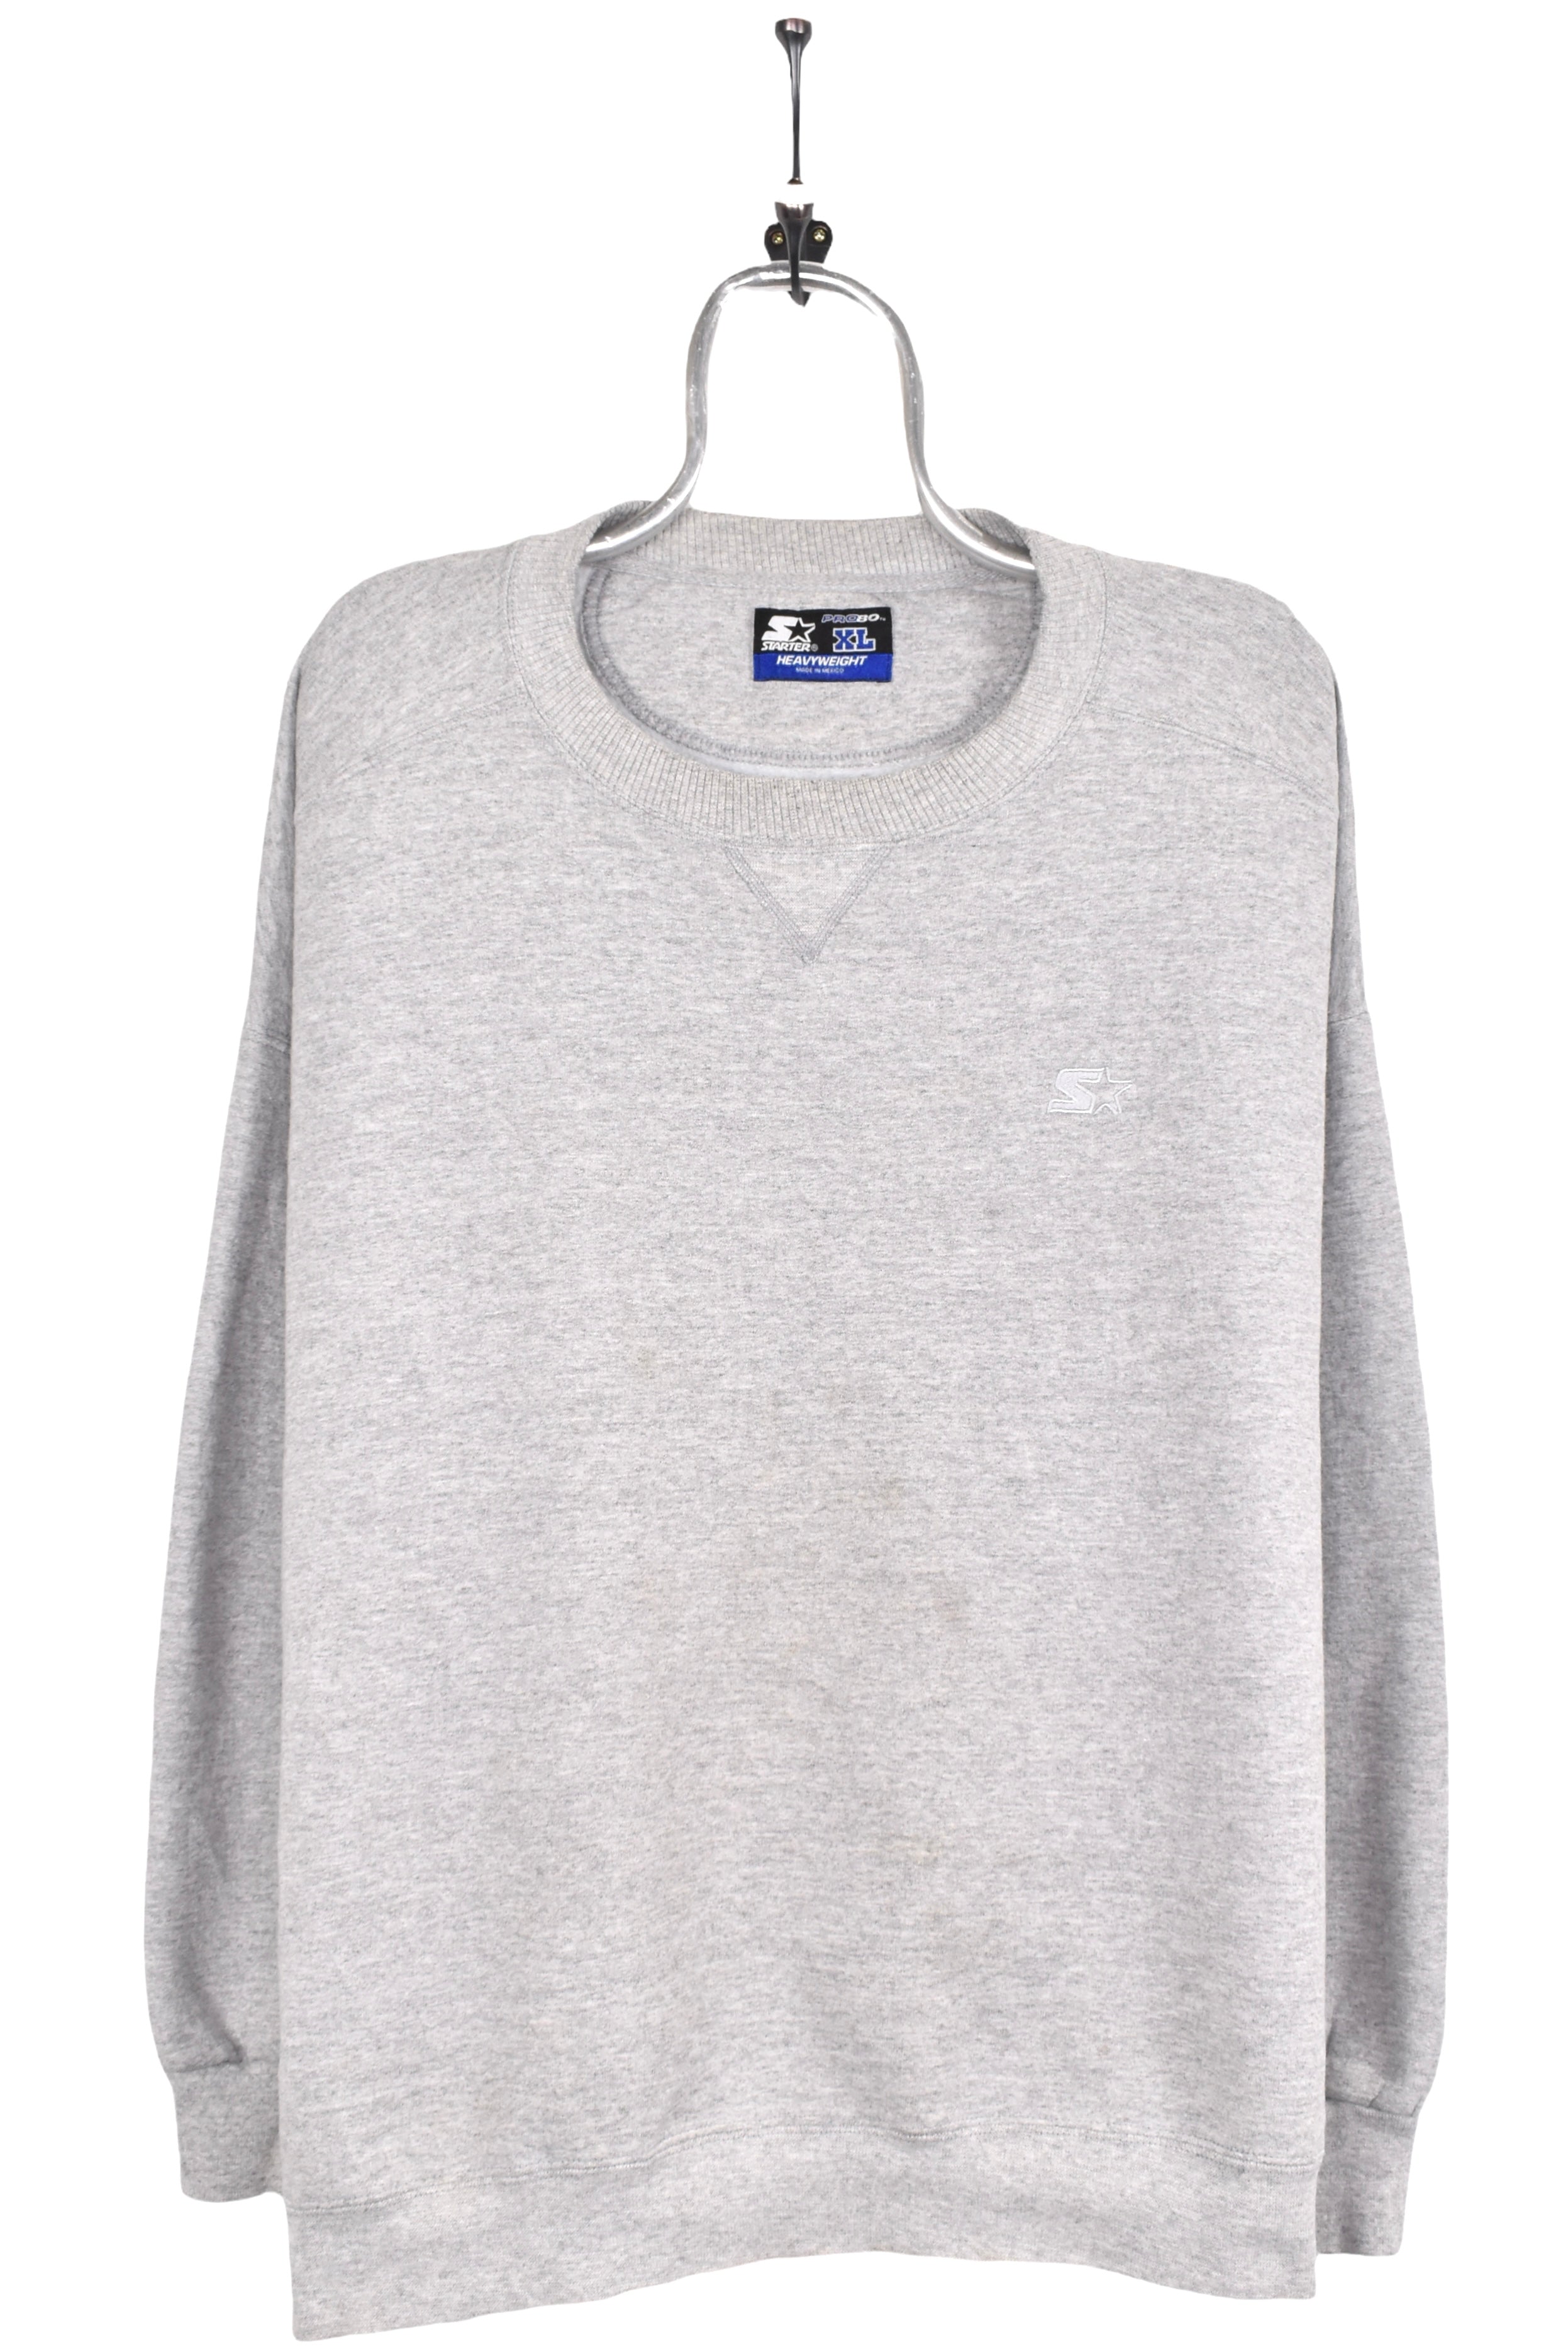 Vintage Starter sweatshirt, grey embroidered crewneck - AU XXL STARTER